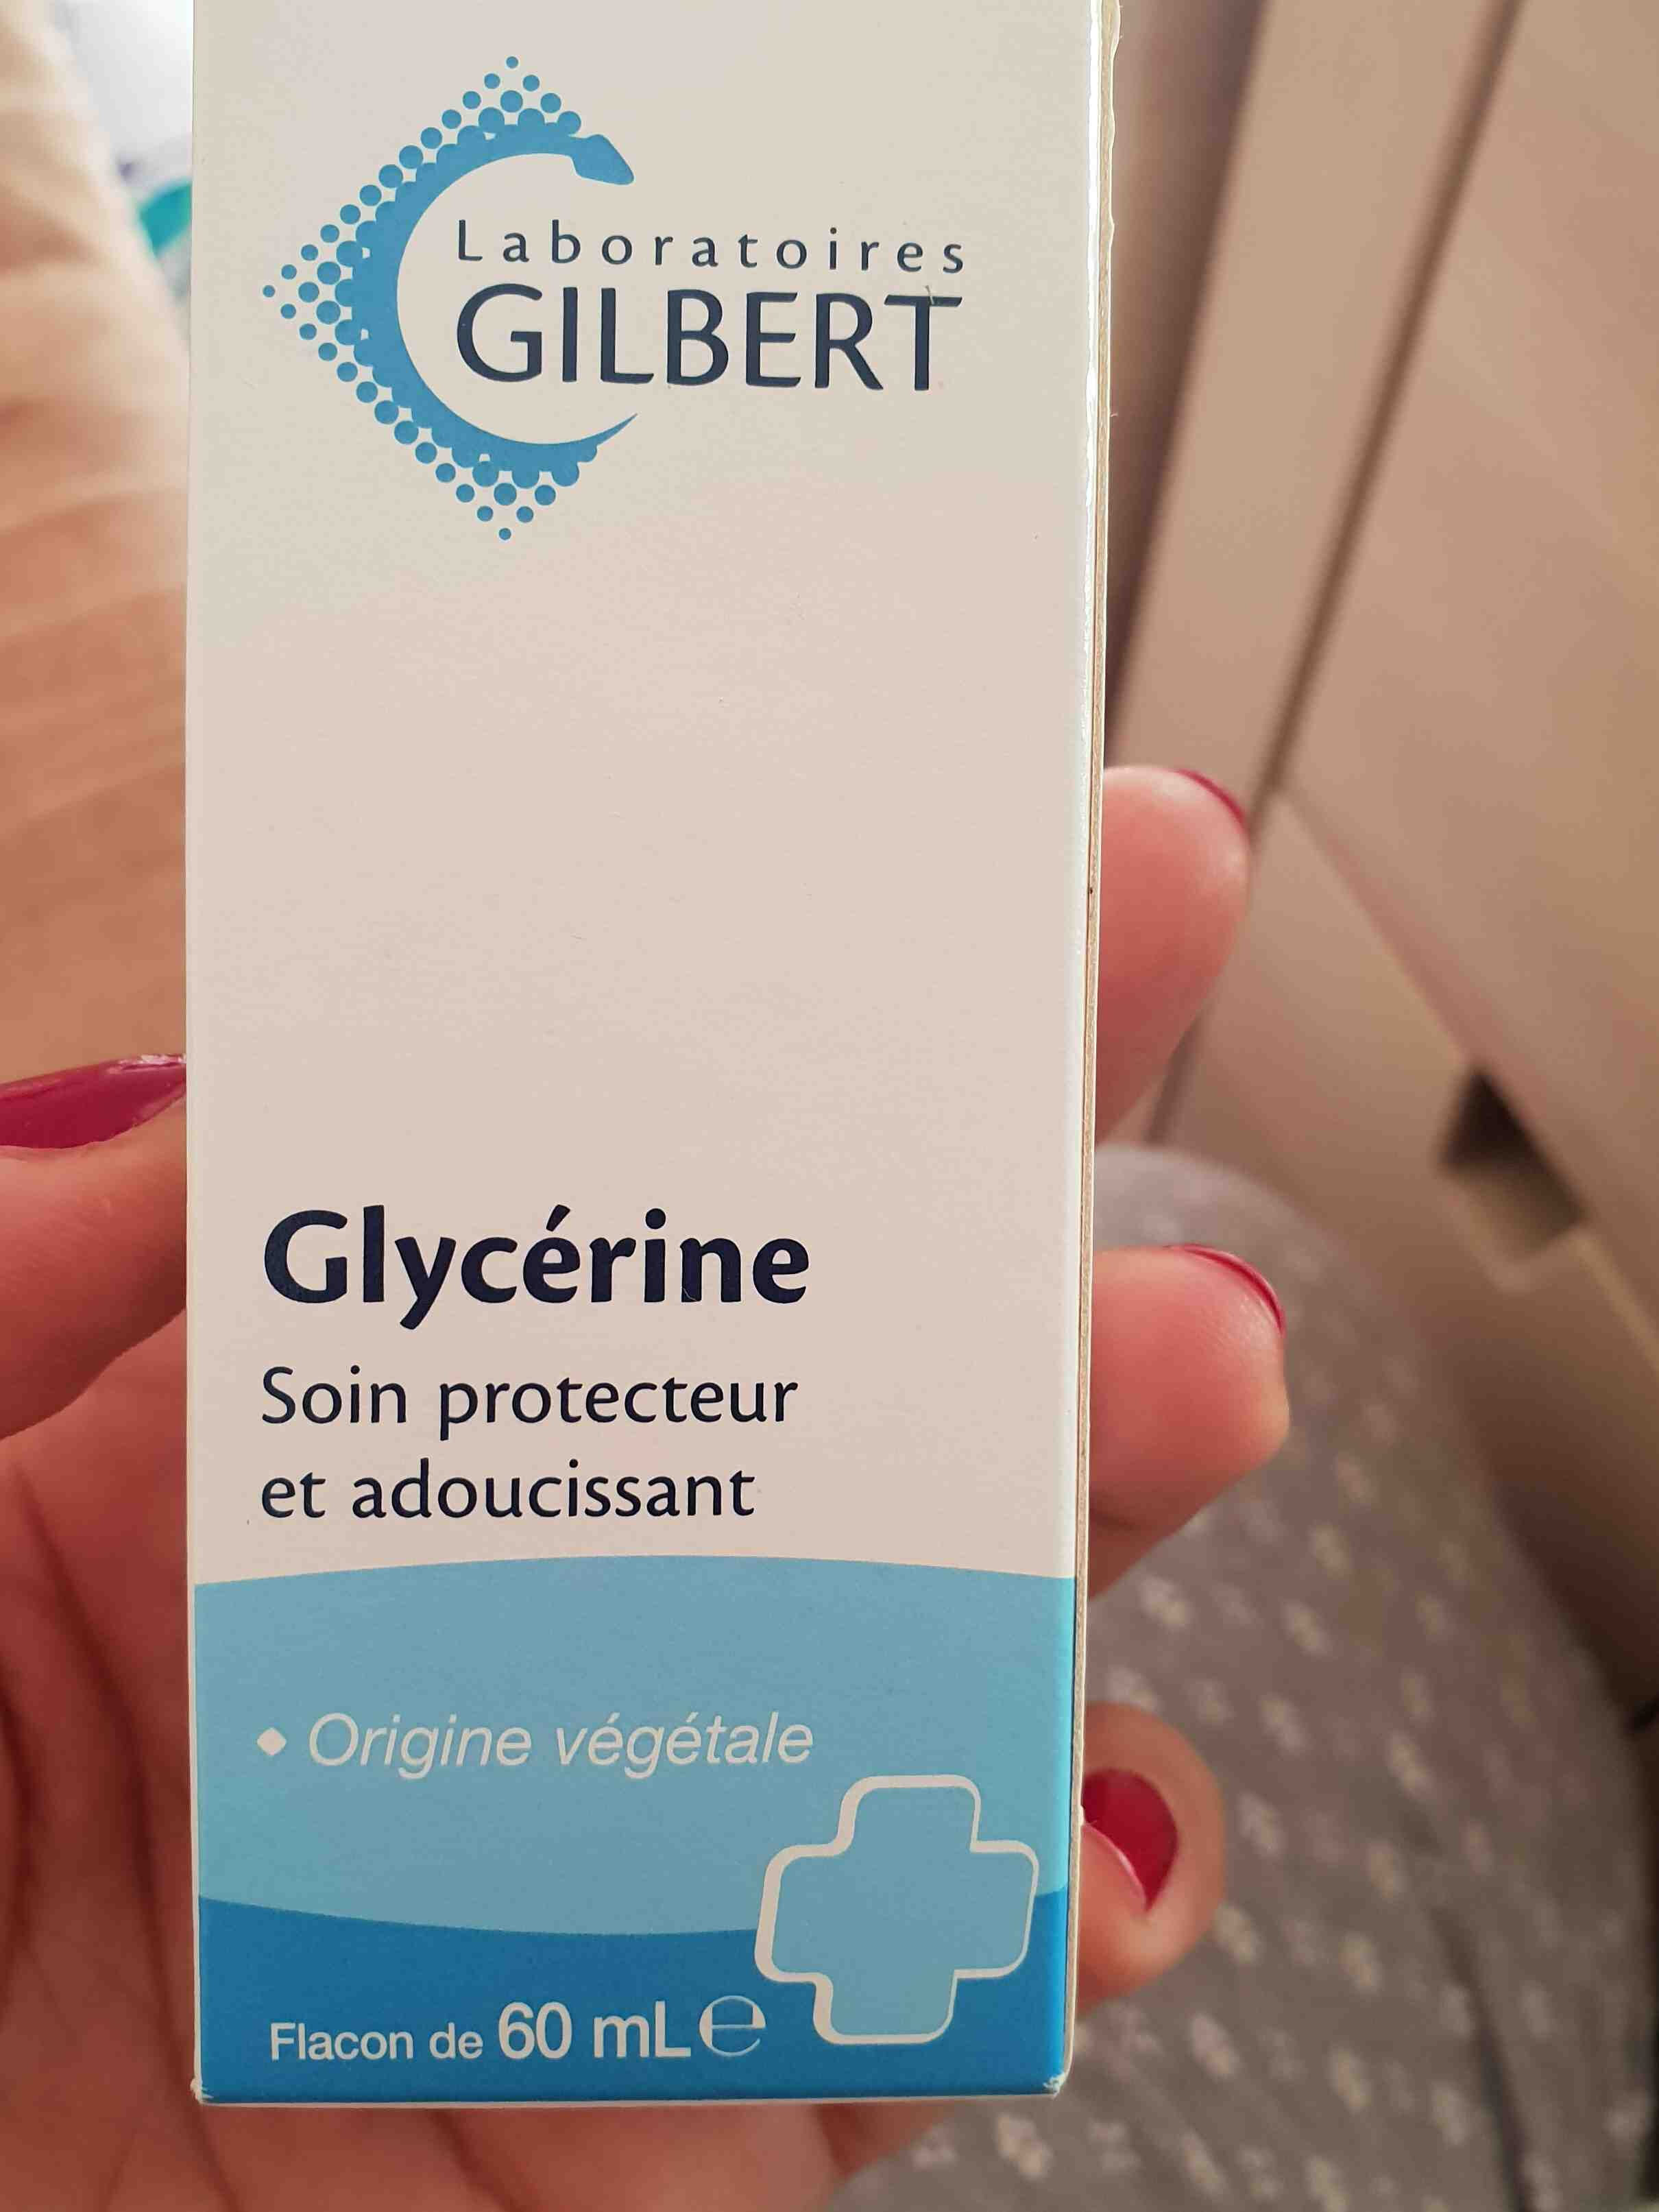 glycerine - Ingredients - en